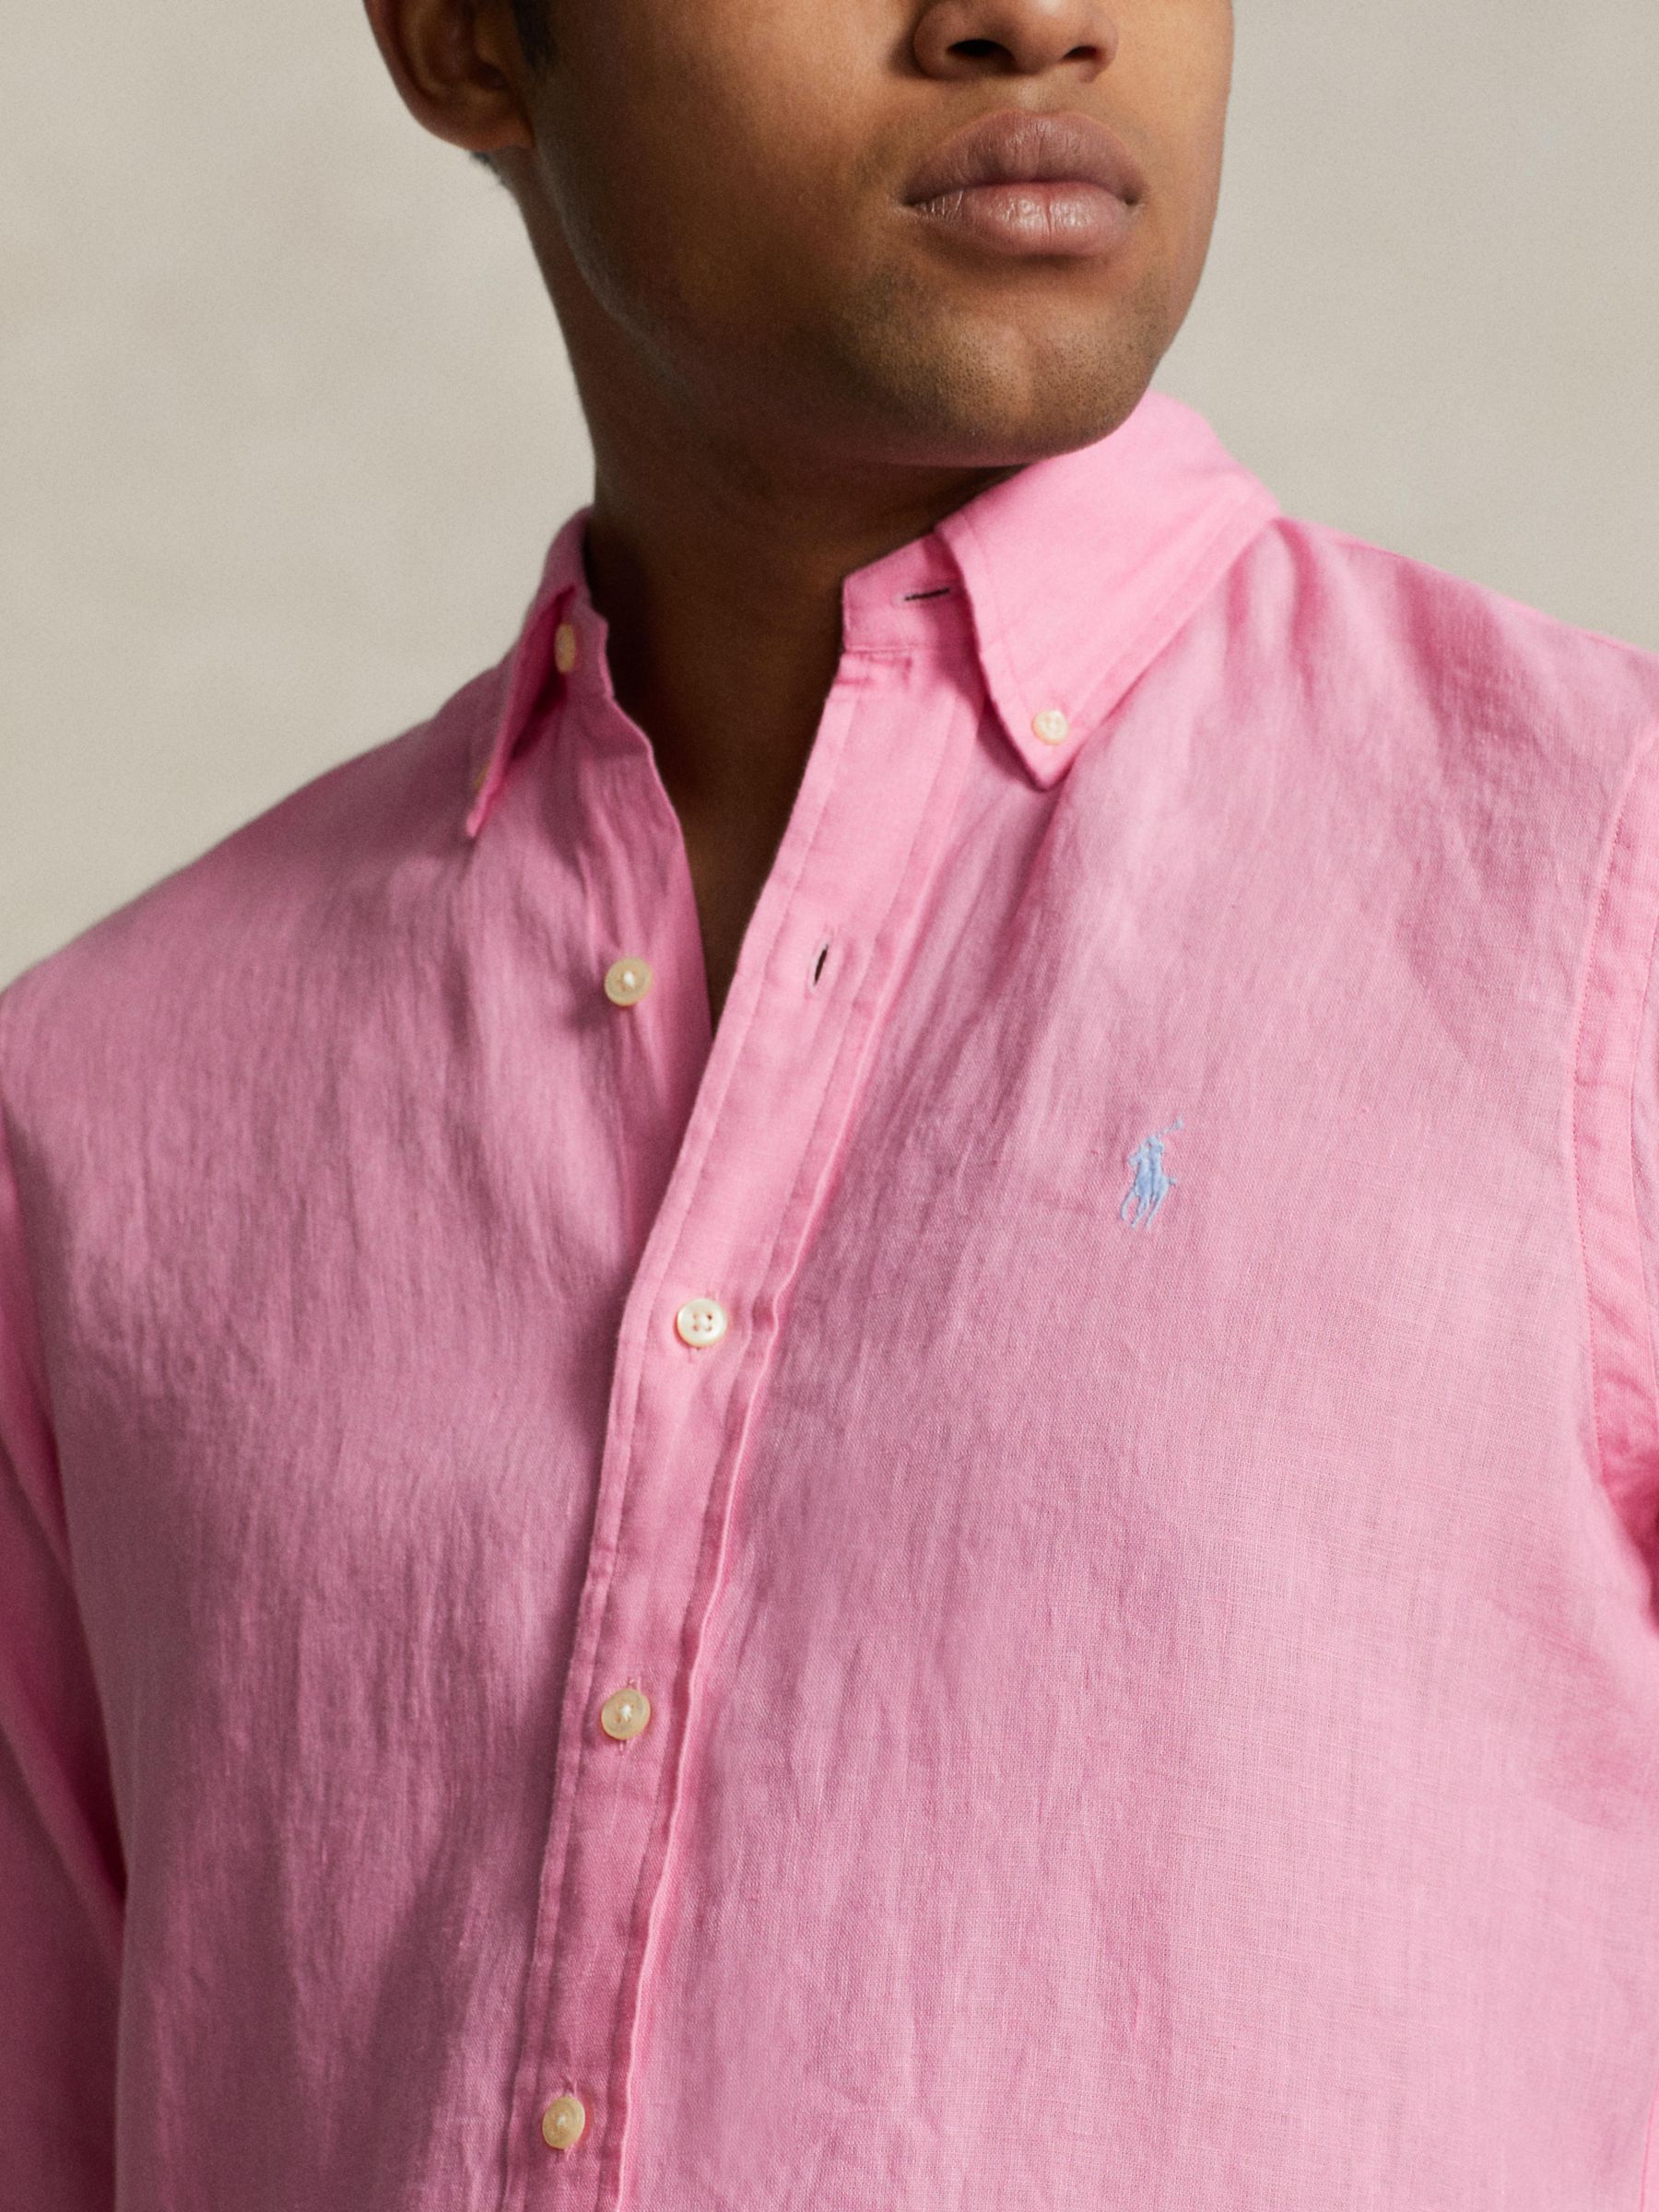 Ralph Lauren Tailored Fit Long Sleeve Linen Shirt, Florida Pink, S